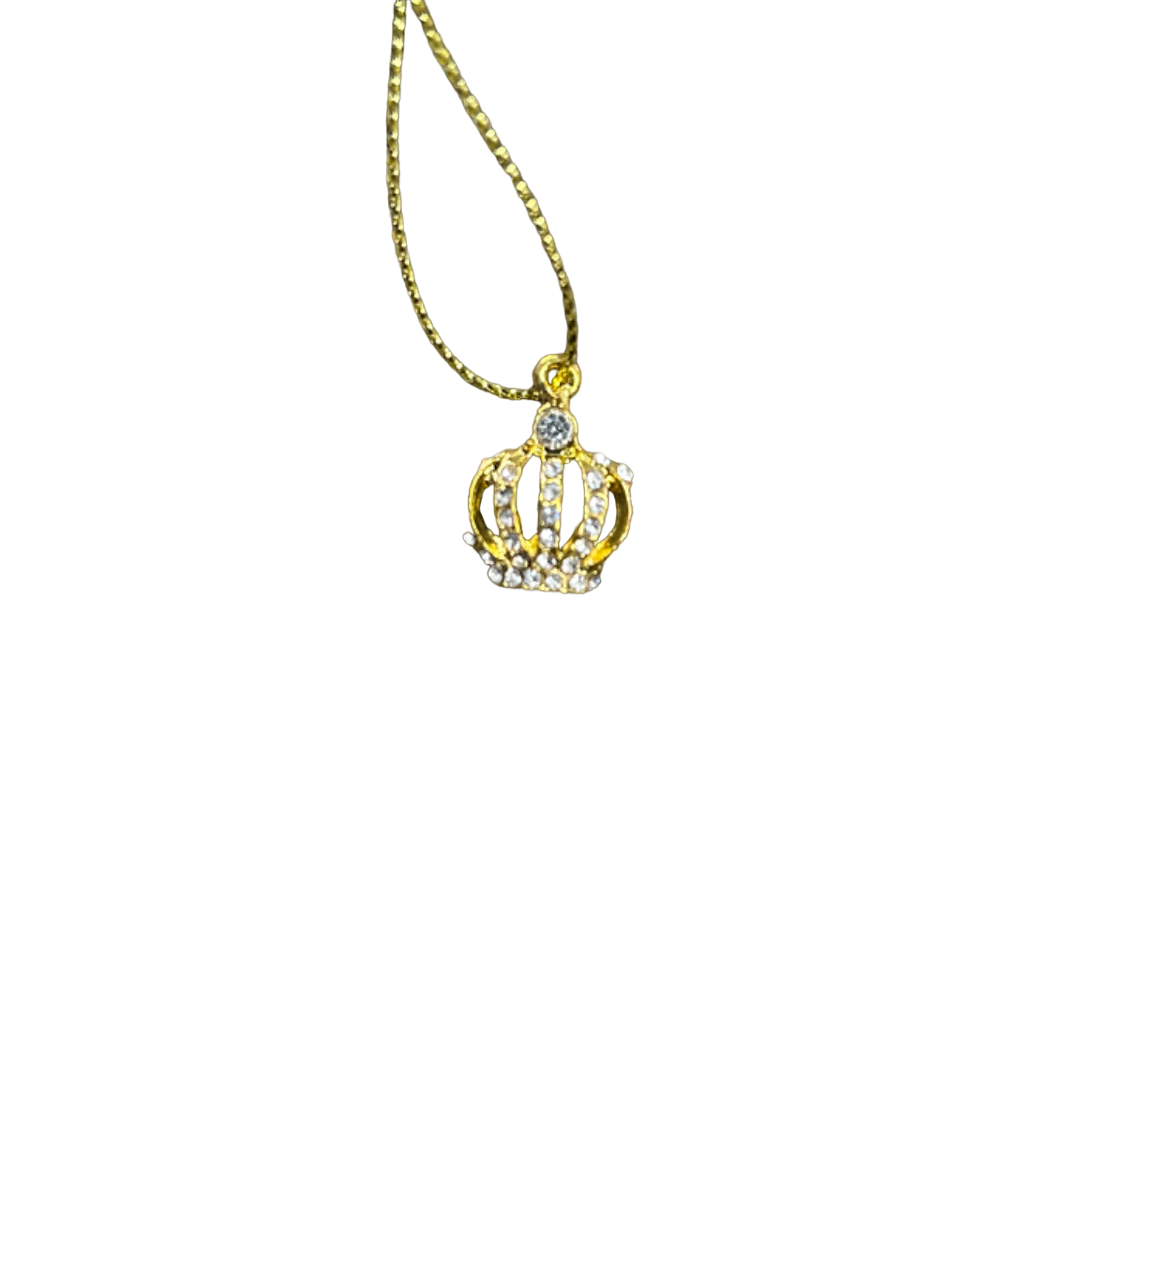 Gold Crown Charm w/ Rhinestone